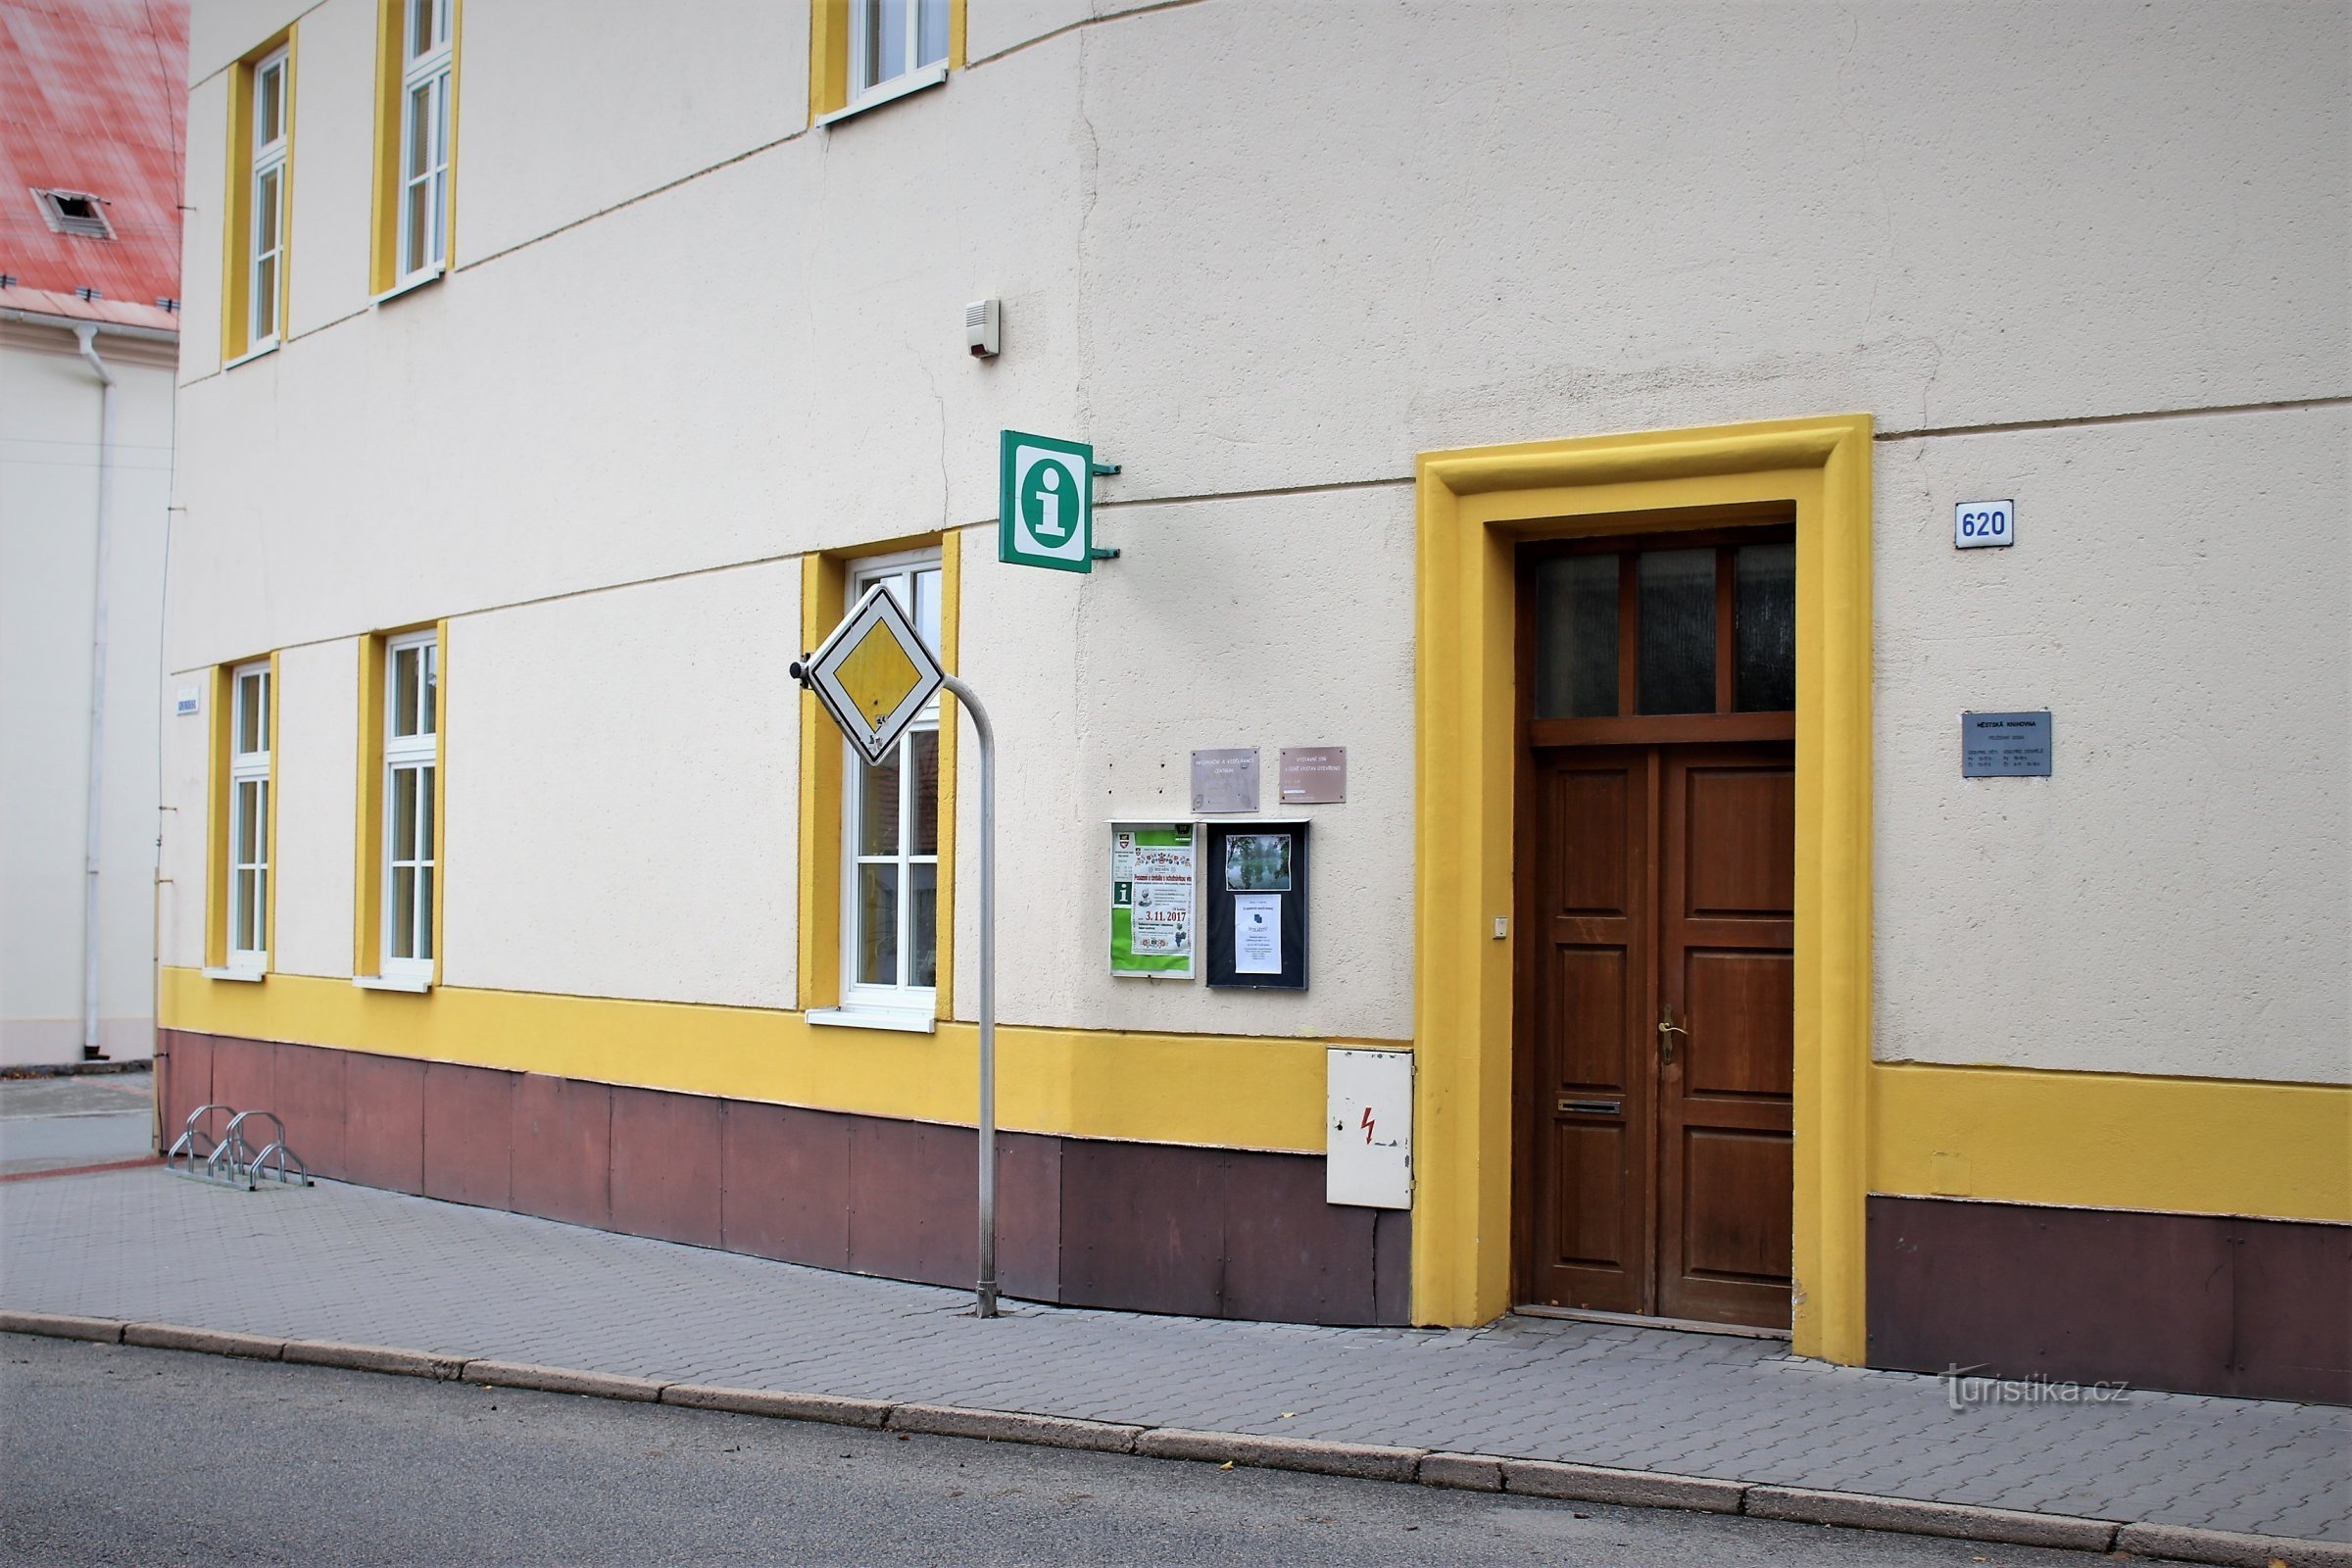 Rájec-Jestřebí - Informatie- en educatief centrum van de stad